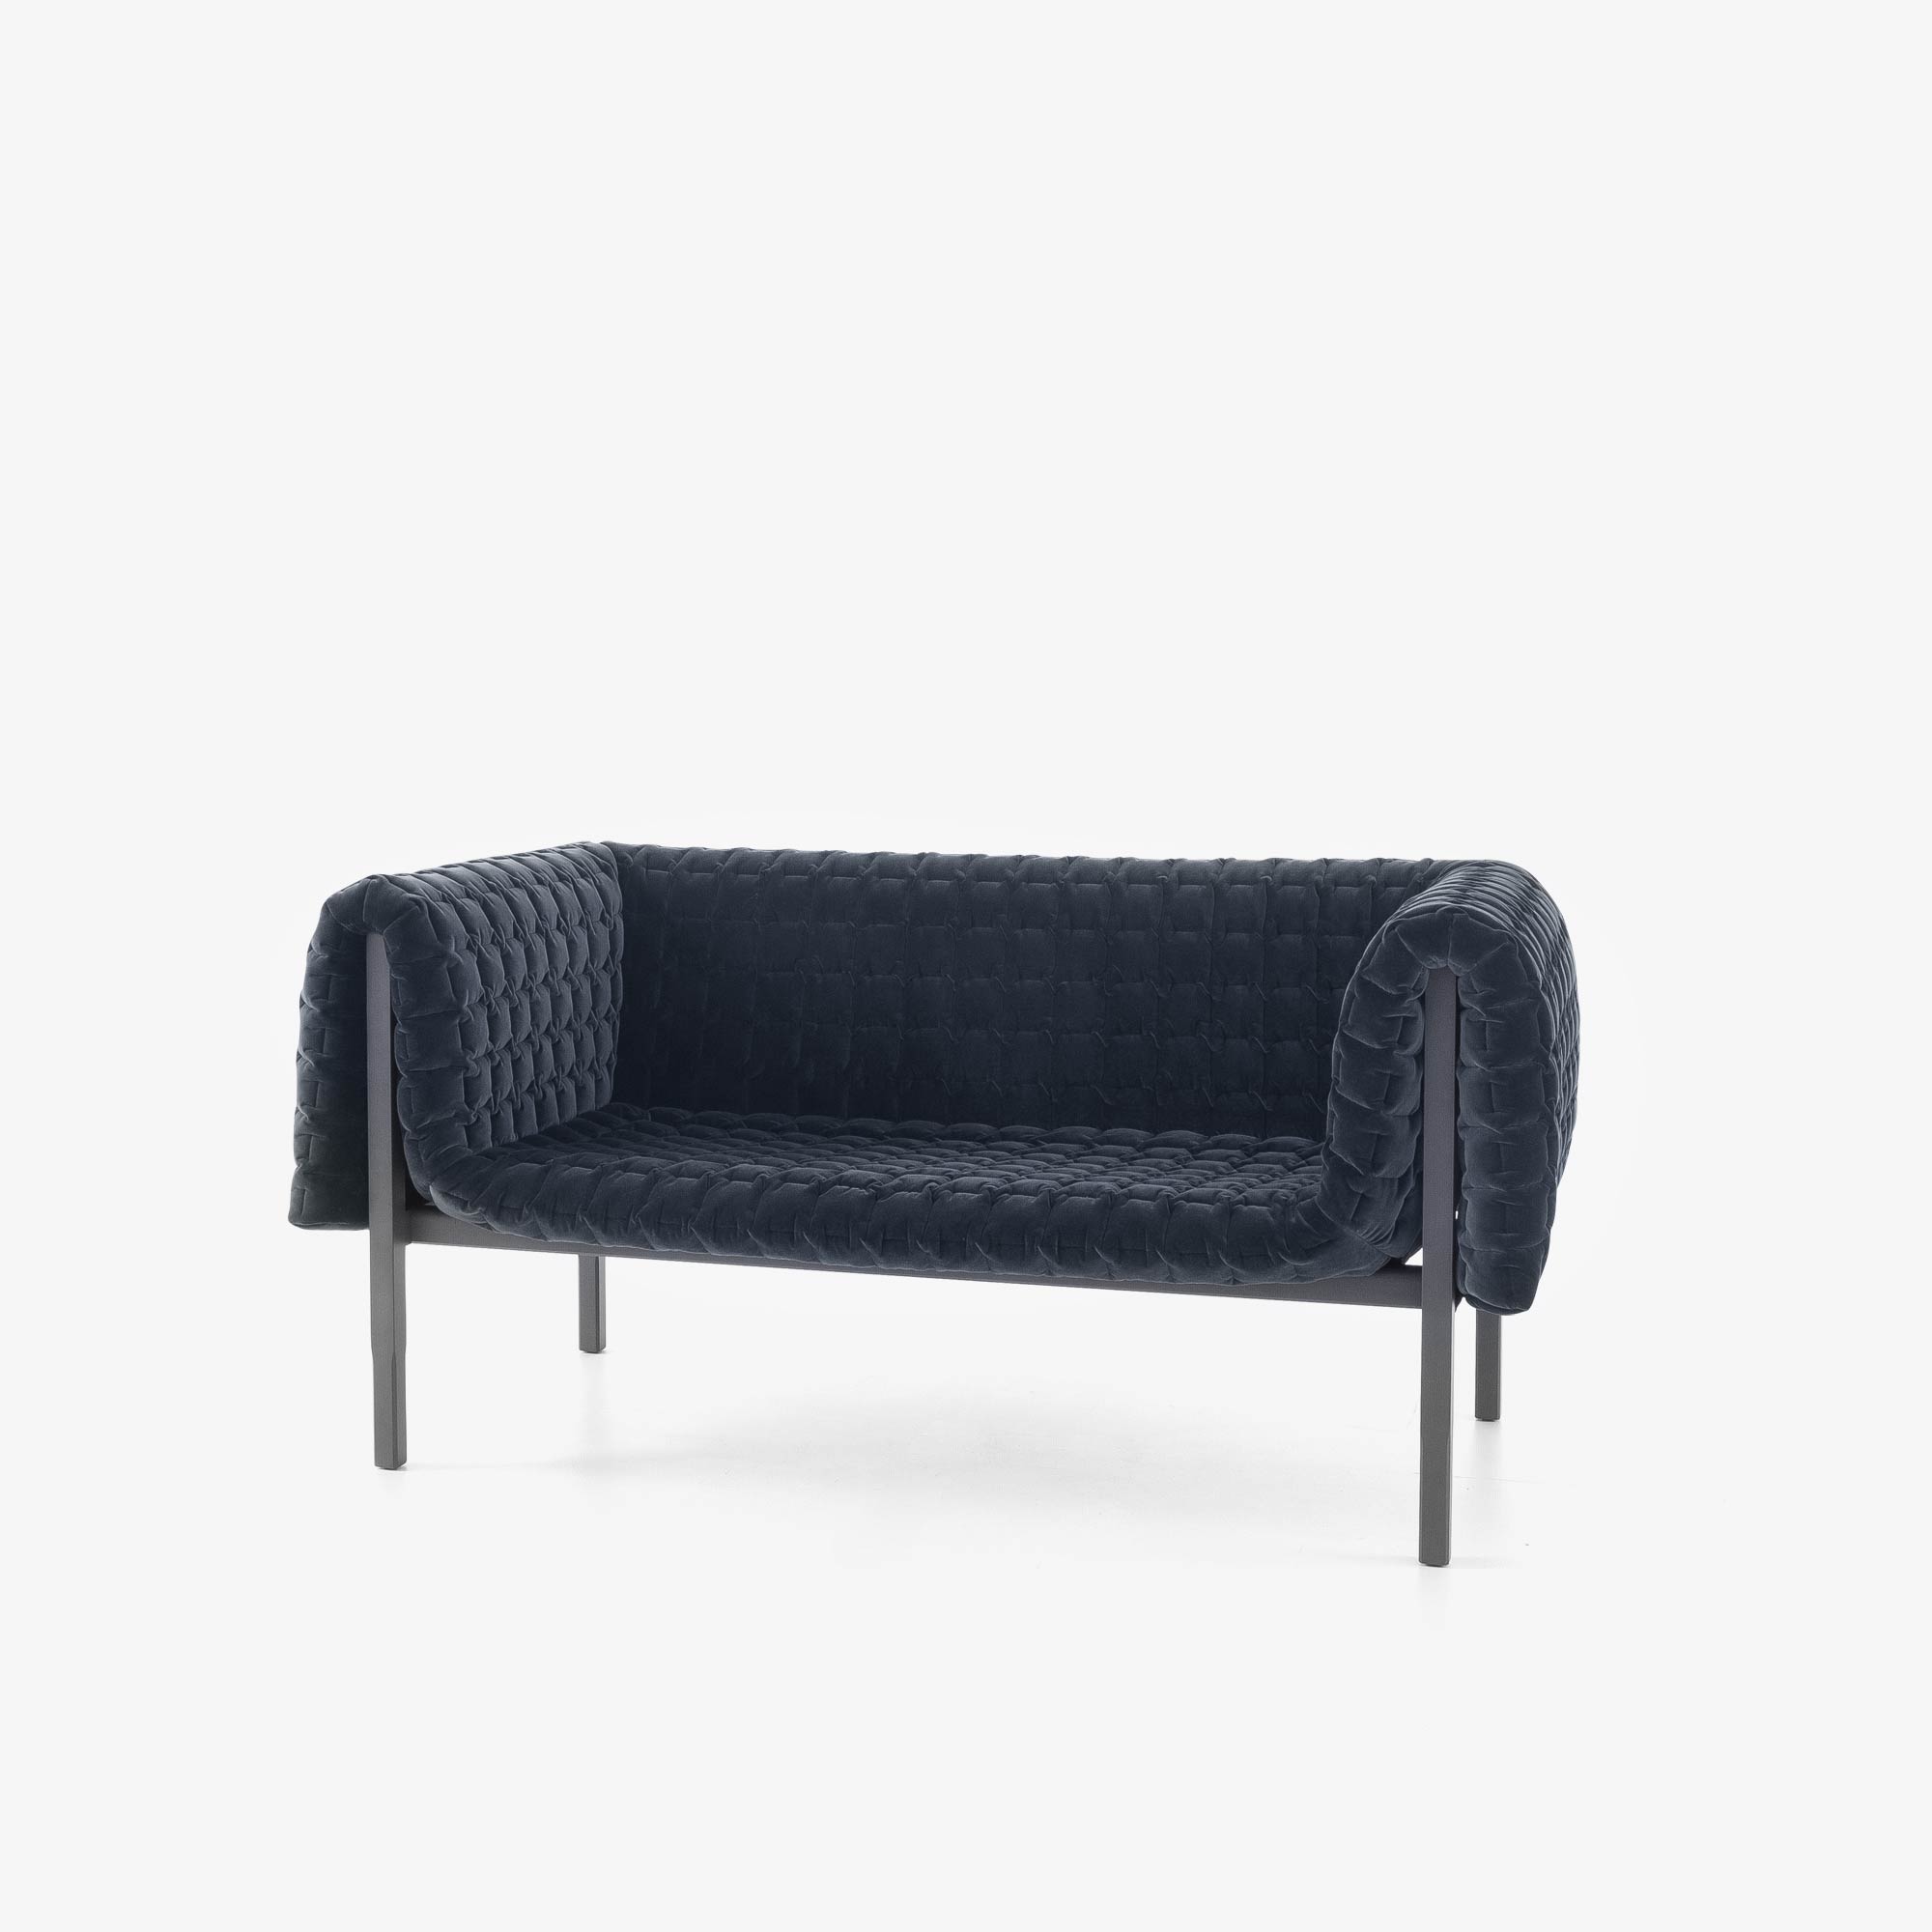 Image Medium sofa   3